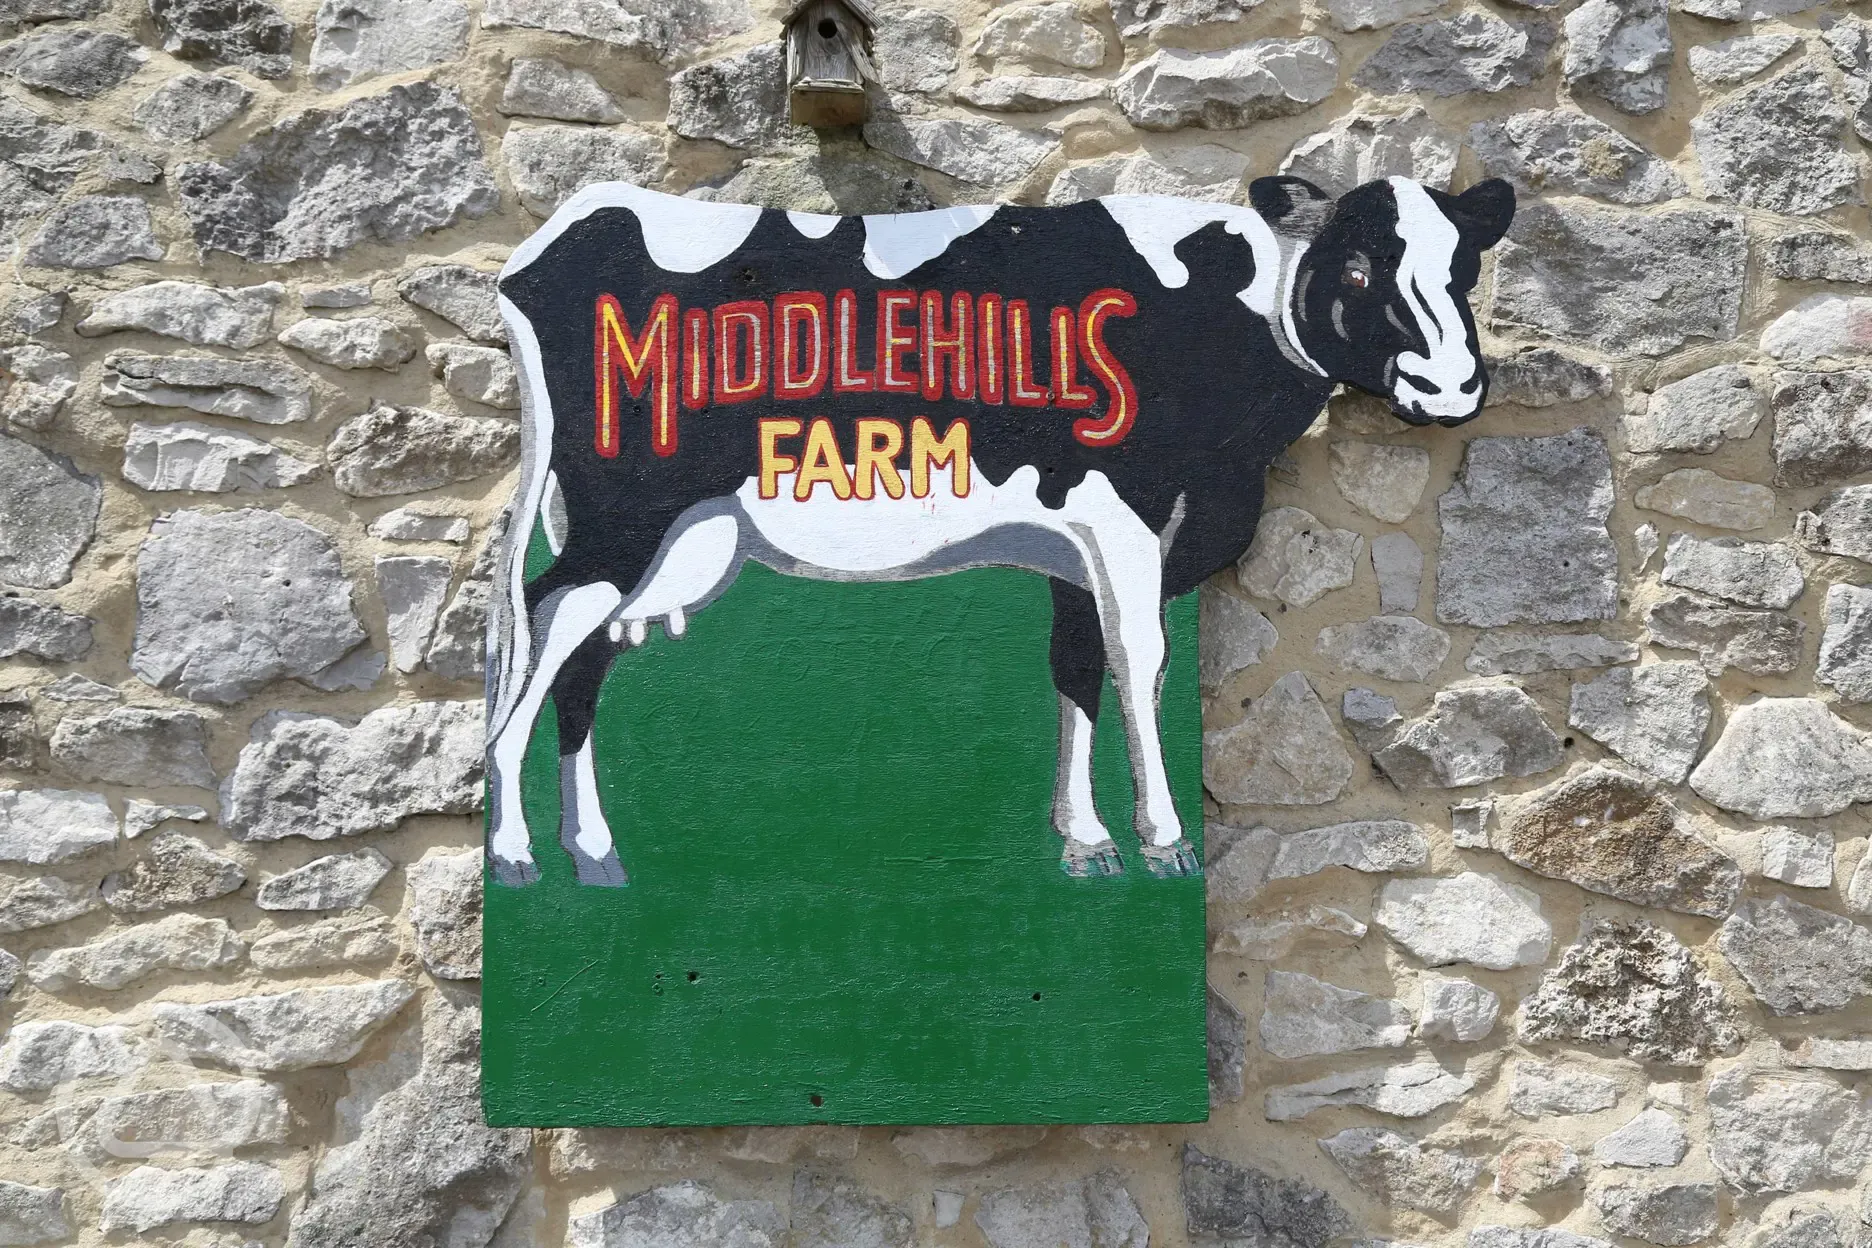 Middlehills farm